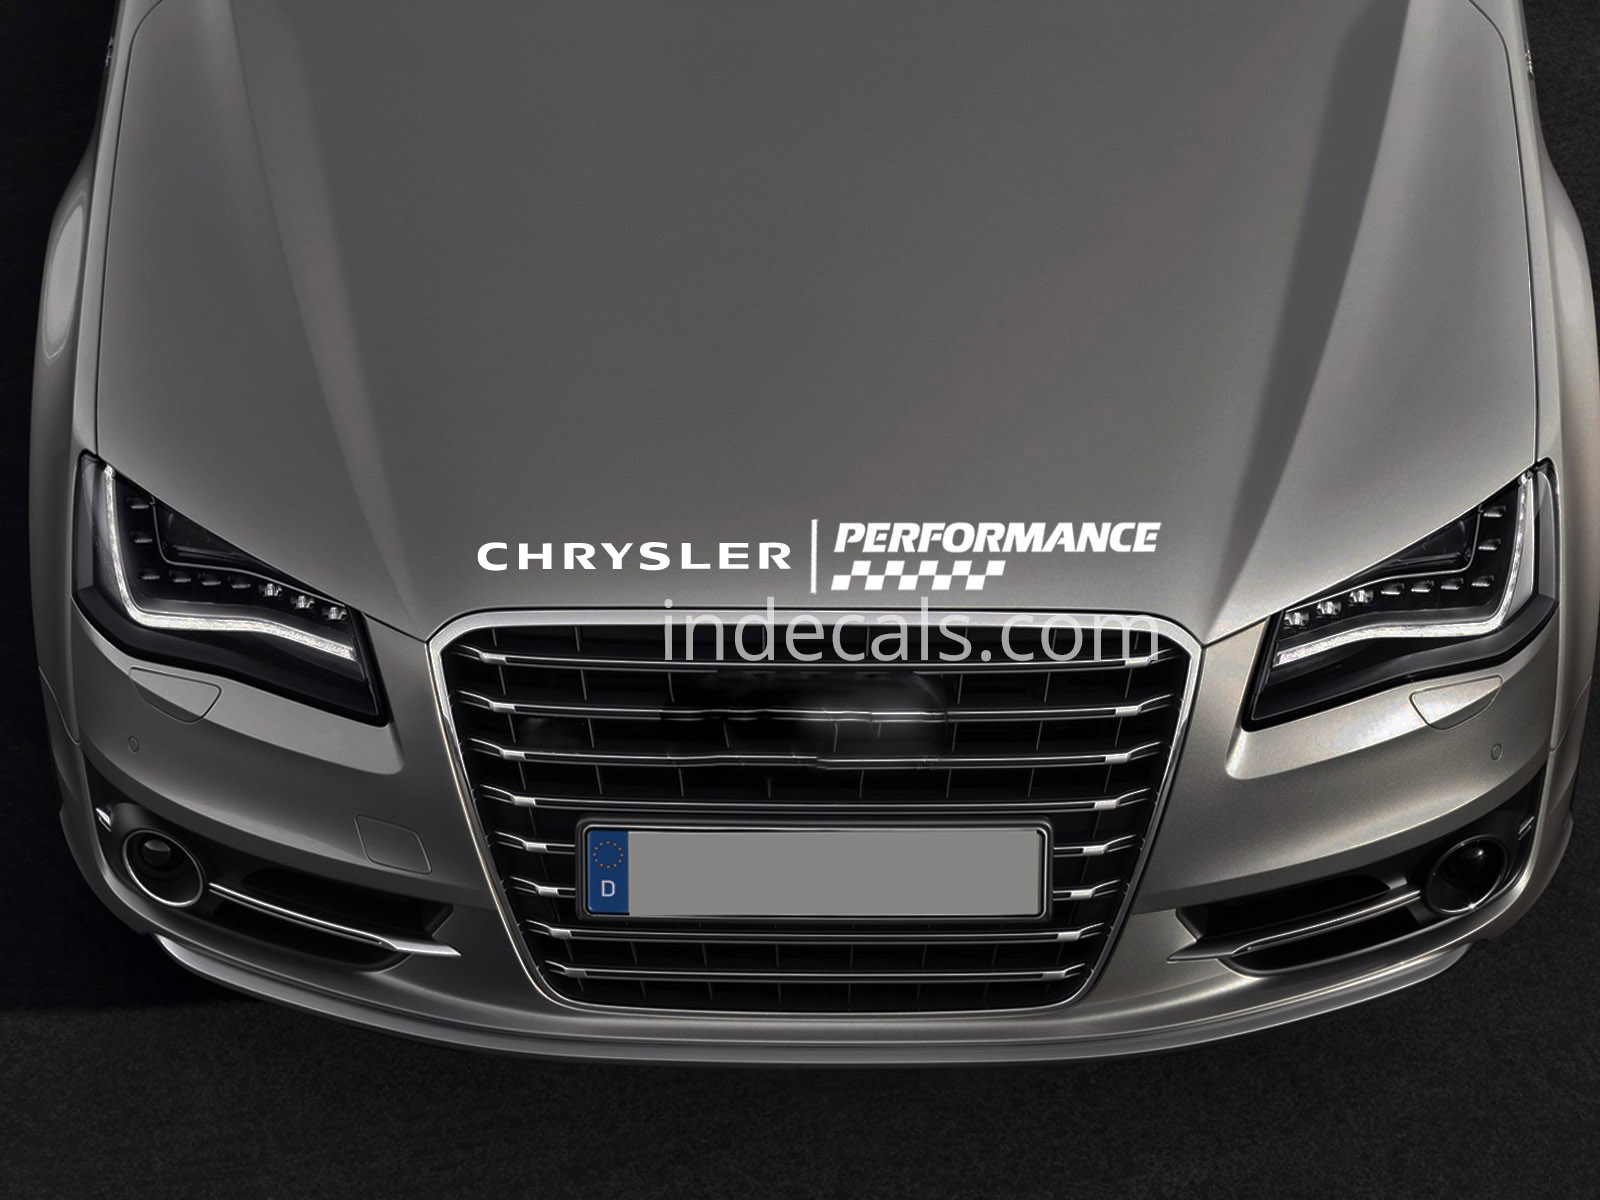 1 x Chrysler Peformance Sticker for Bonnet - White